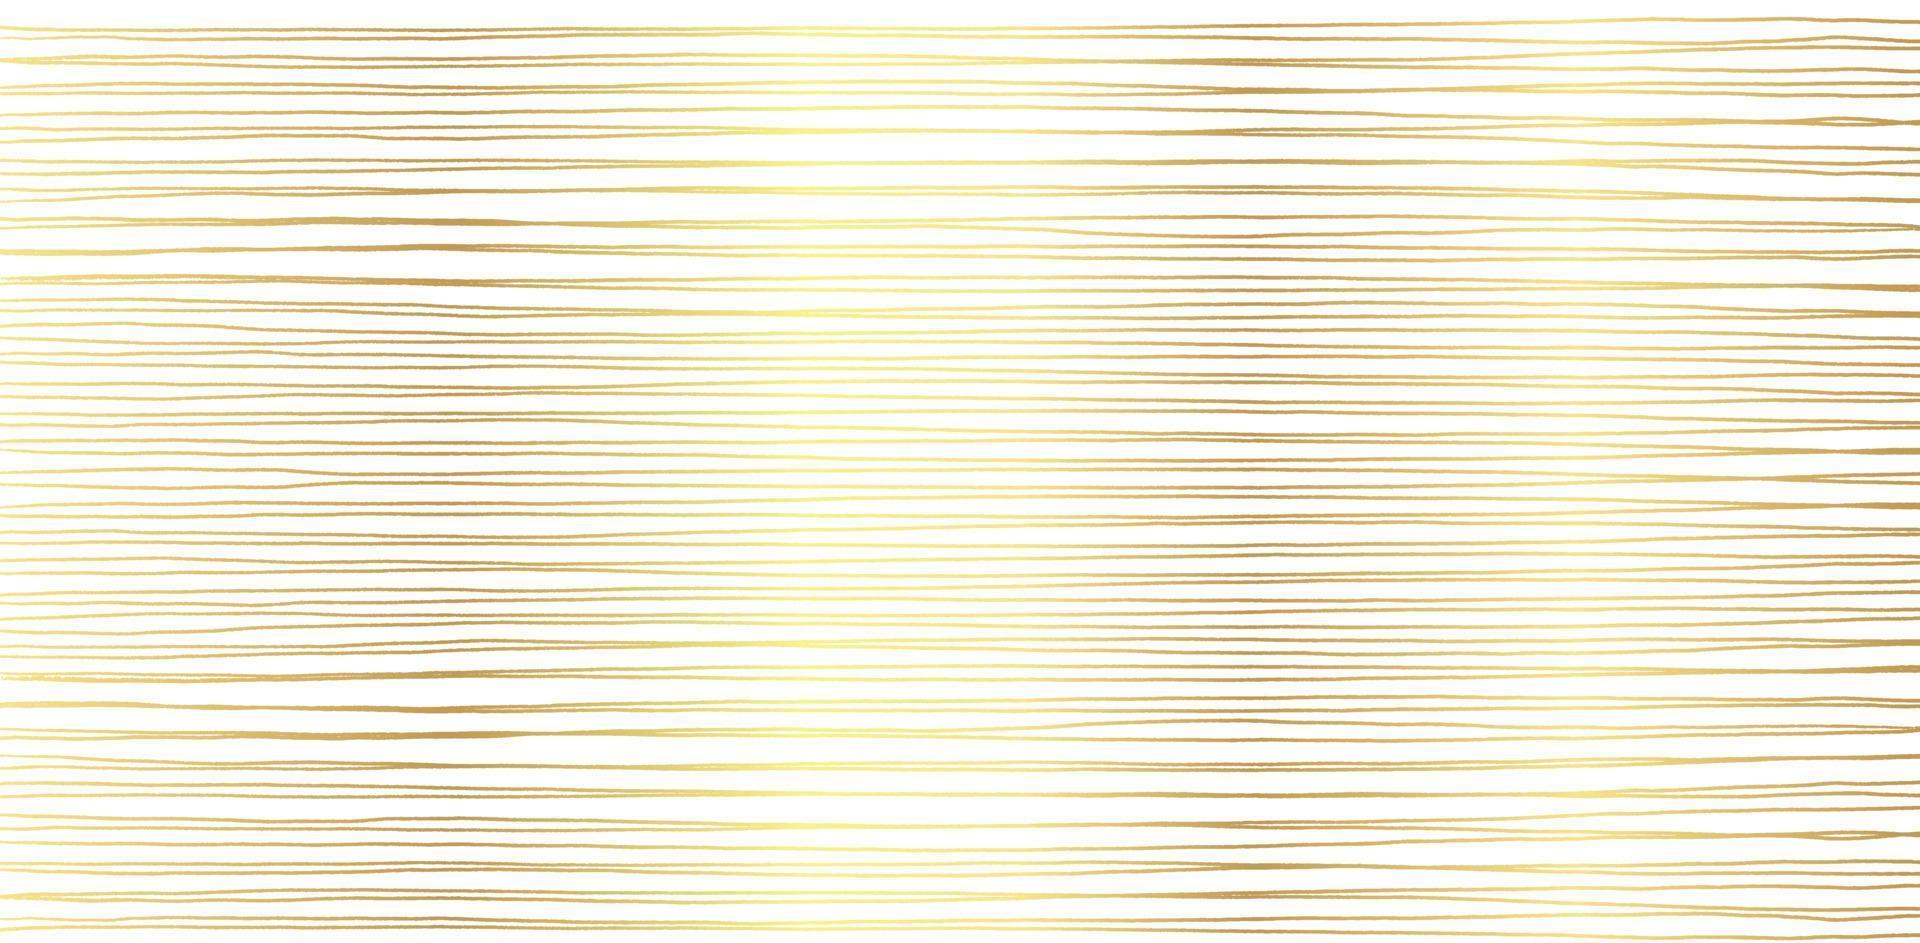 handgezeichnetes abstraktes Muster mit handgezeichneten Goldlinien, Strichen. Satz von Vektor-Grunge-Pinseln. wellig gestreift, vektor eps 10 illustration